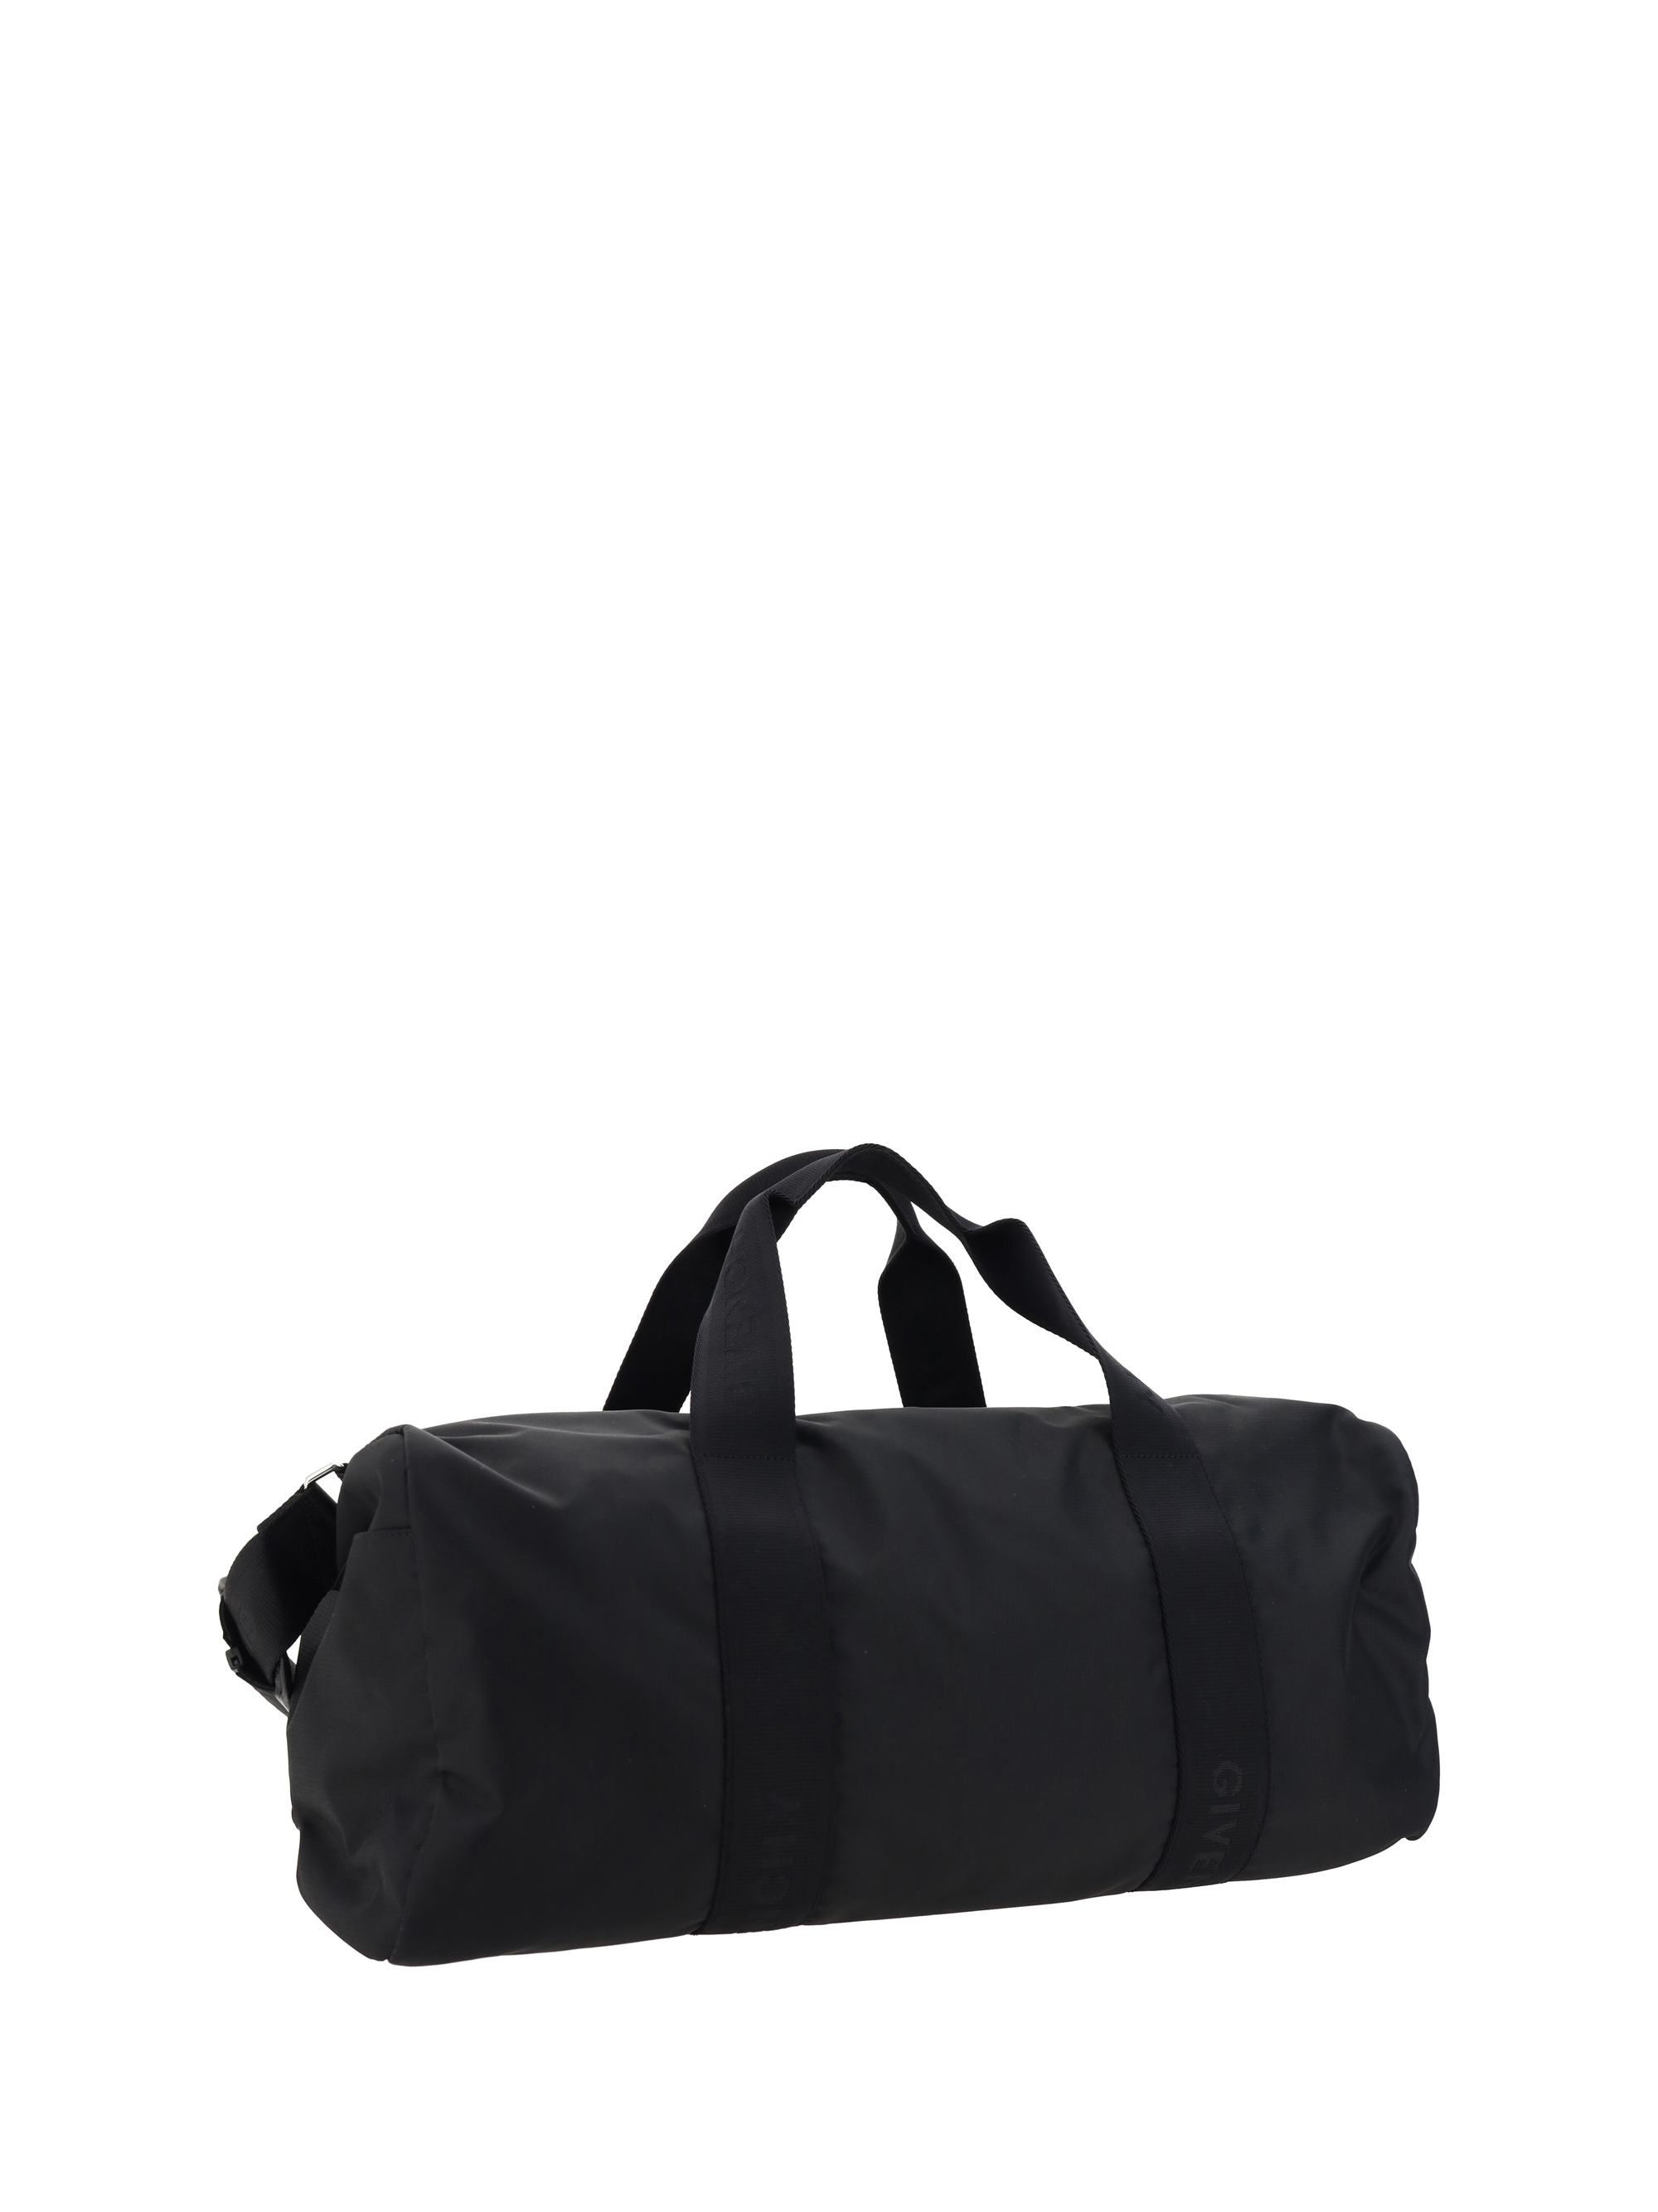 G-Trek Travel Bag